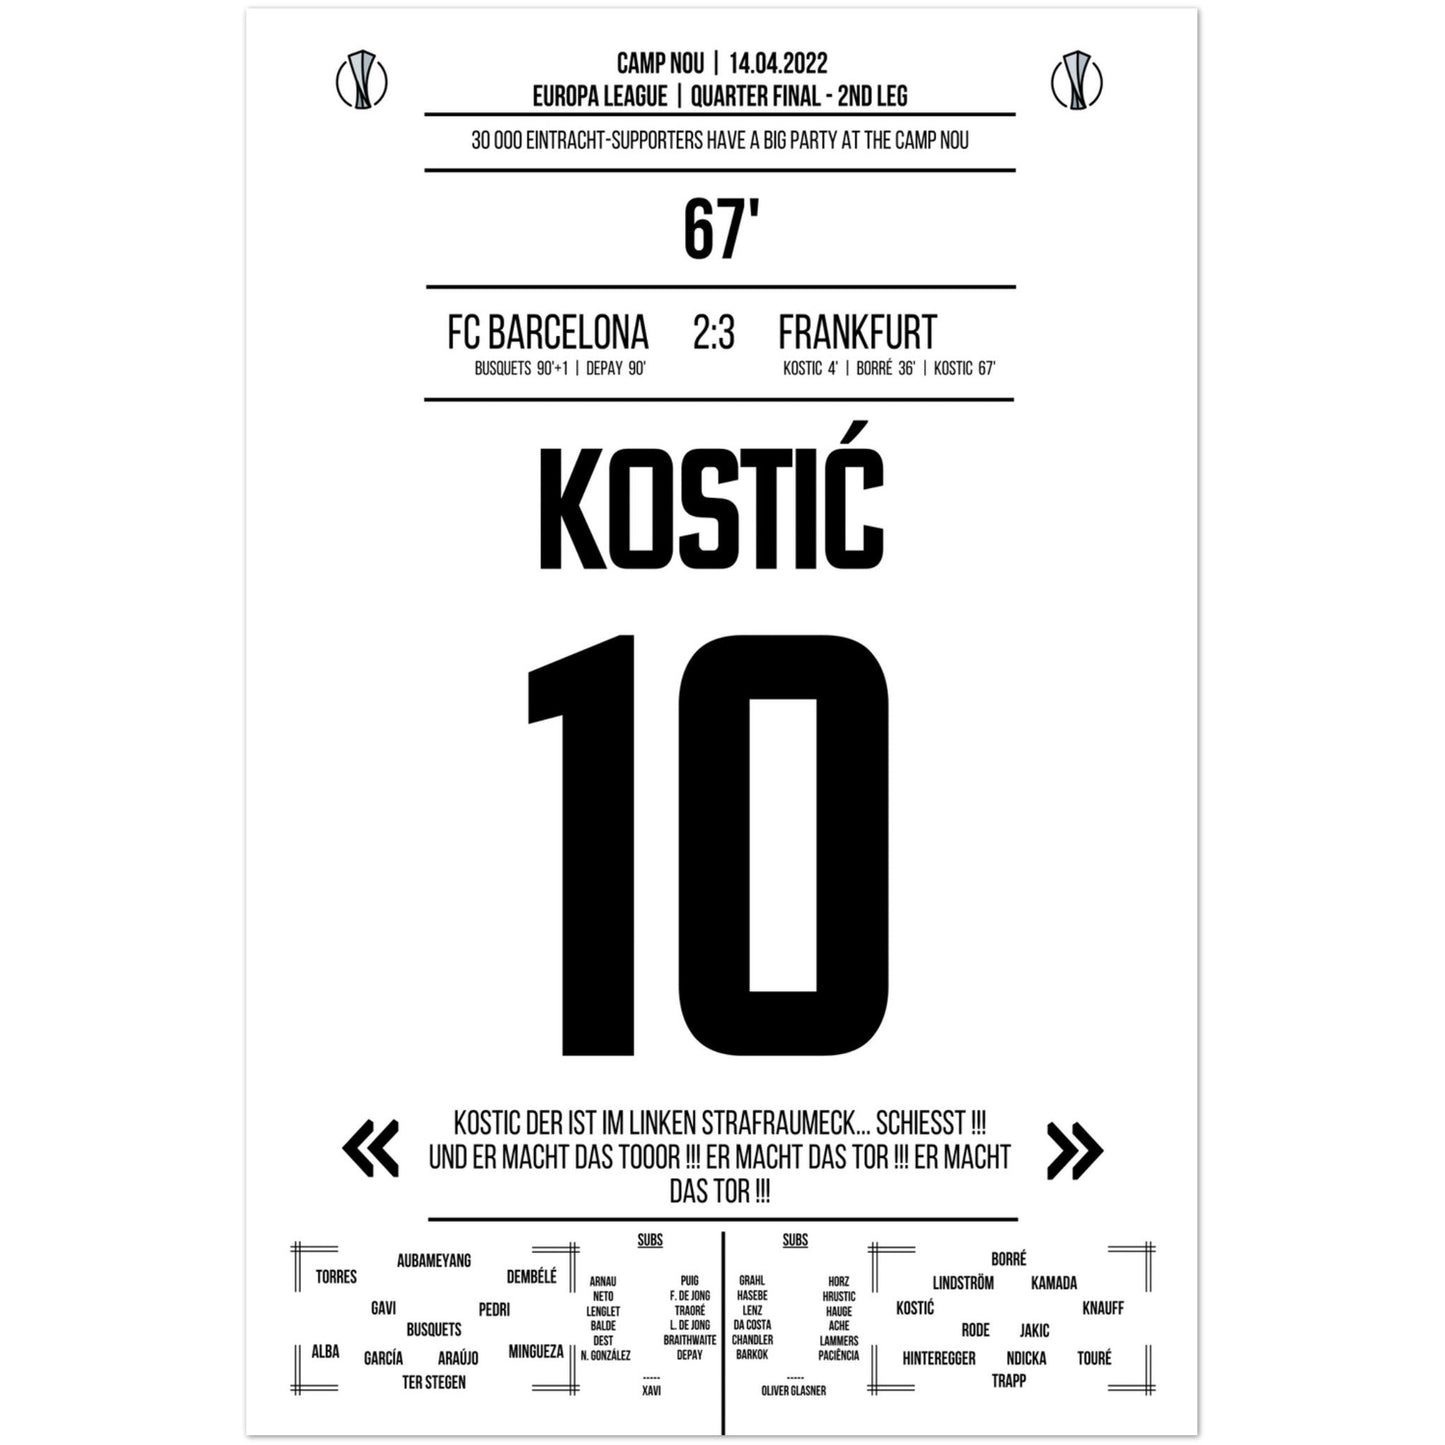 La actuación de gala de Kostic en la gran fiesta de Frankfurt en el Camp Nou